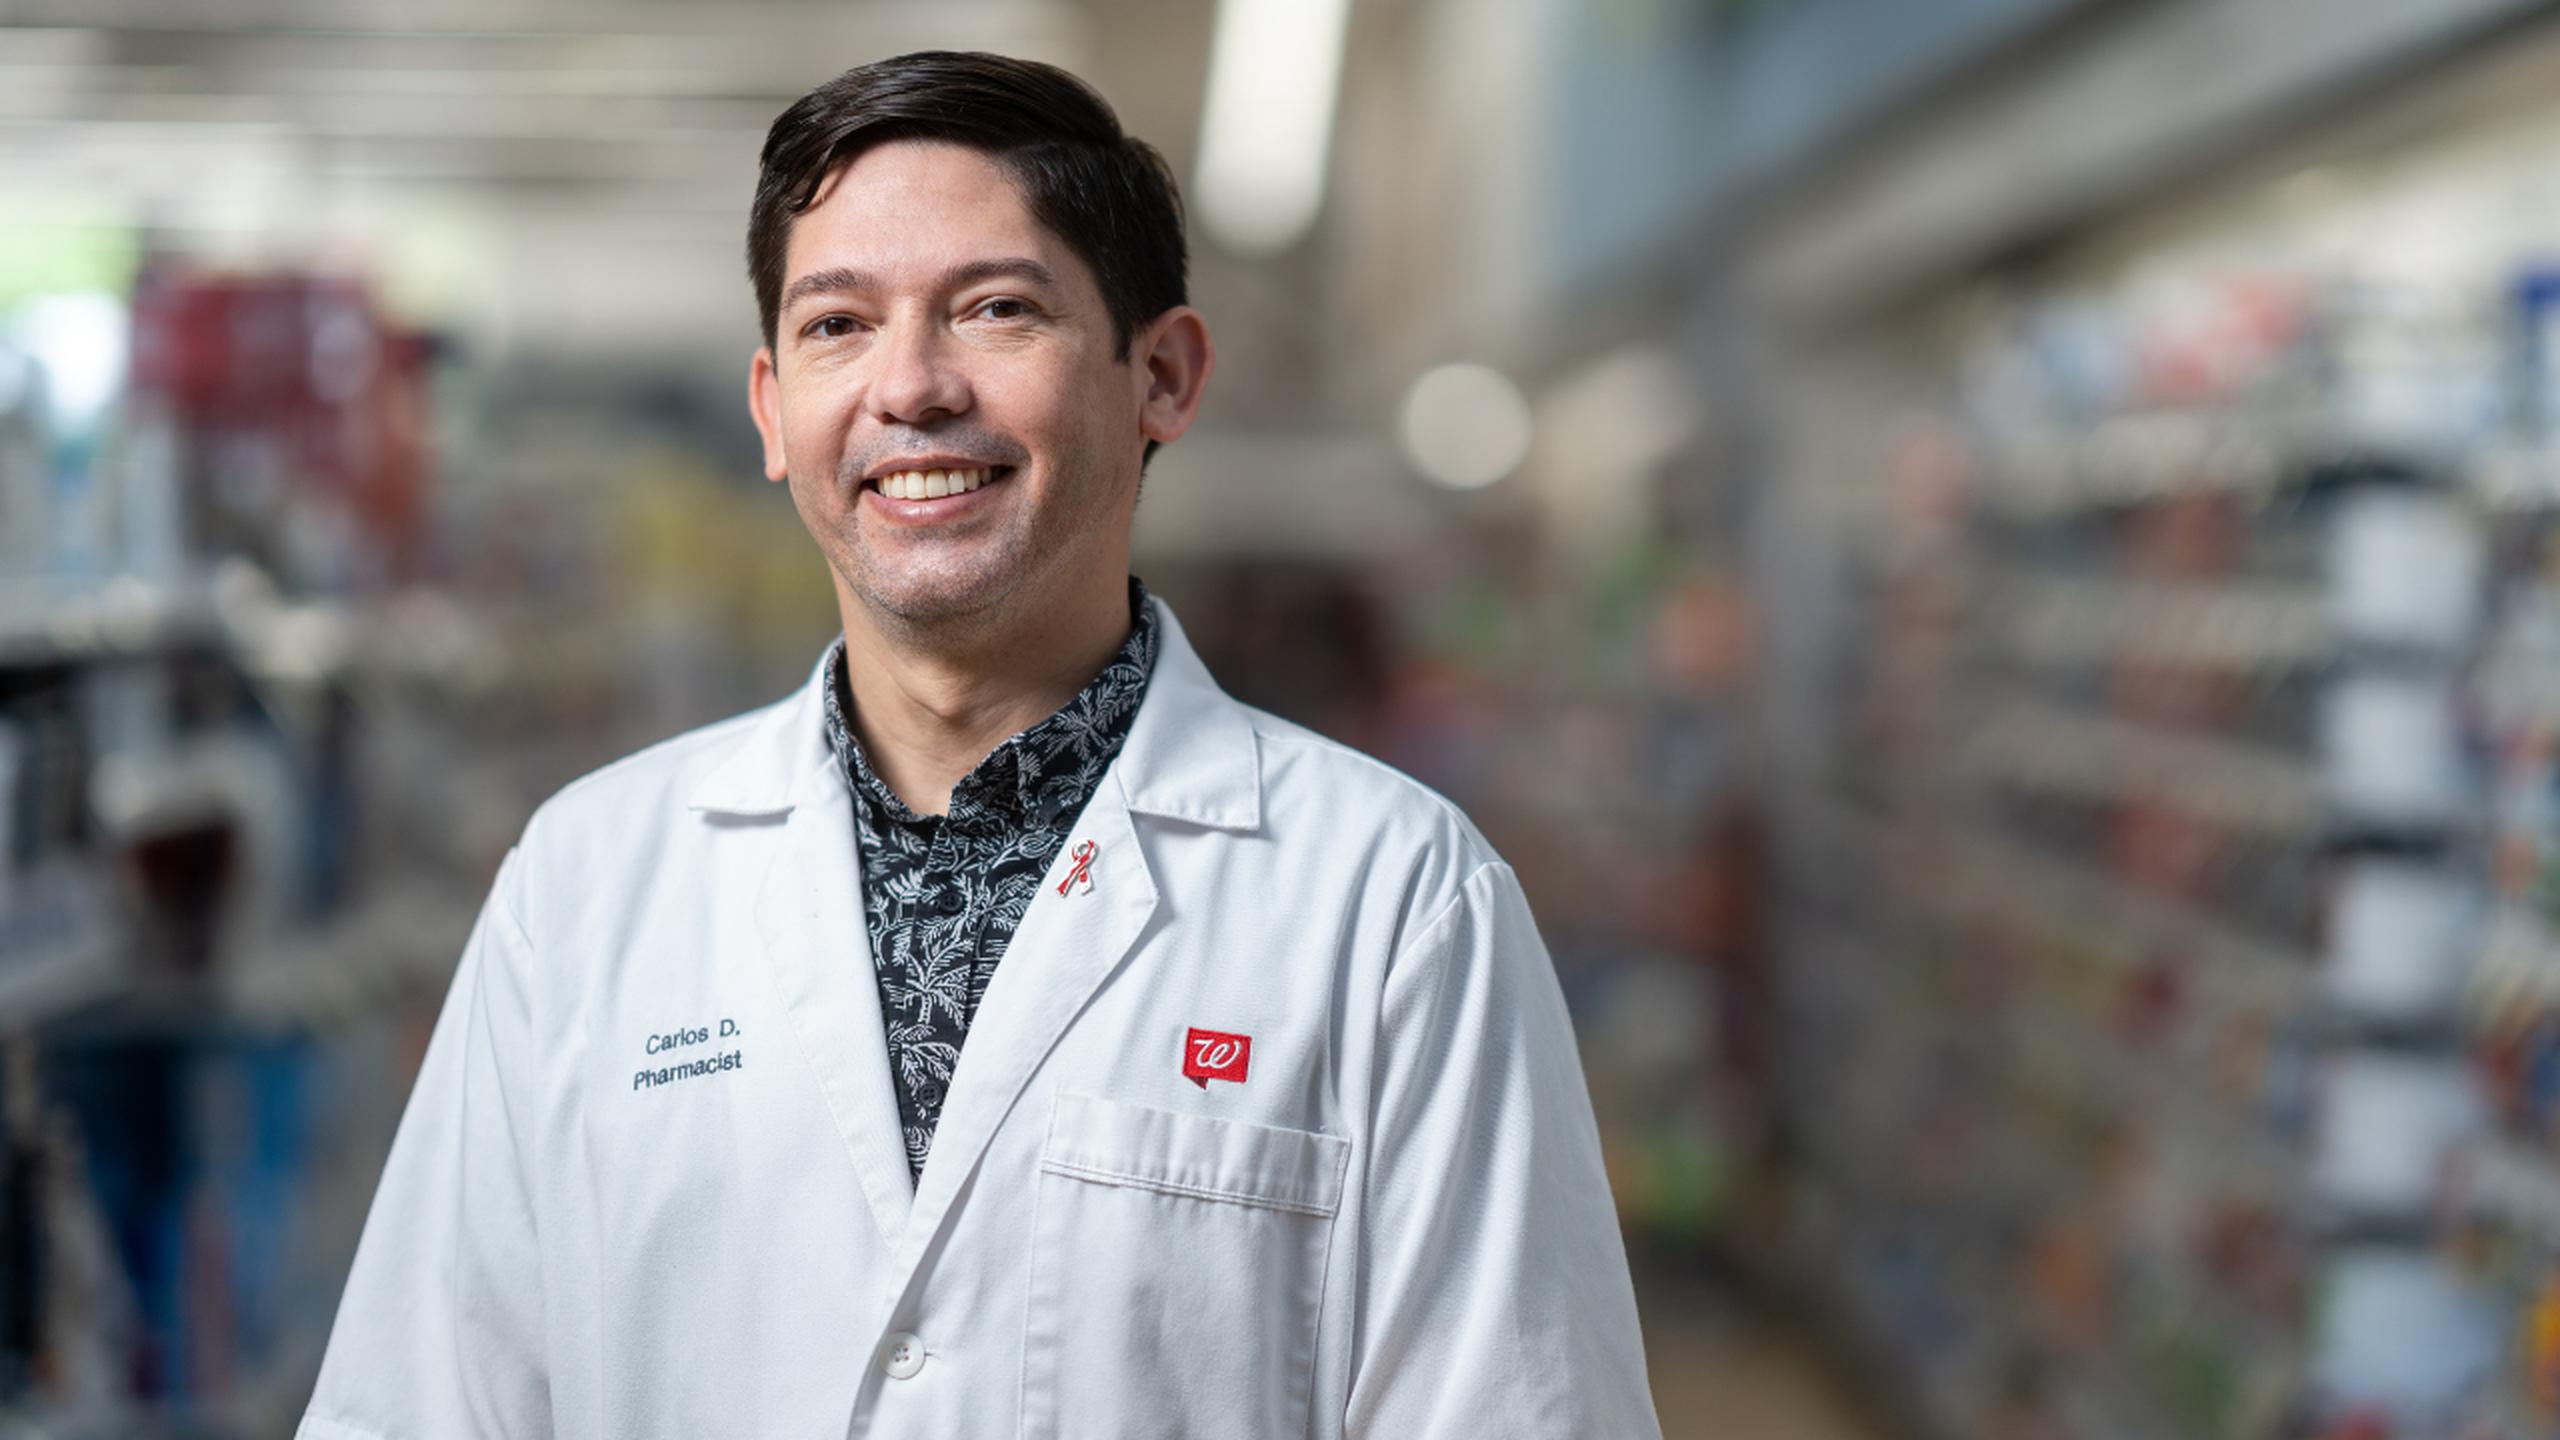 Carlos Díaz cuenta con 16 años de experiencia como farmacéutico en Walgreens.